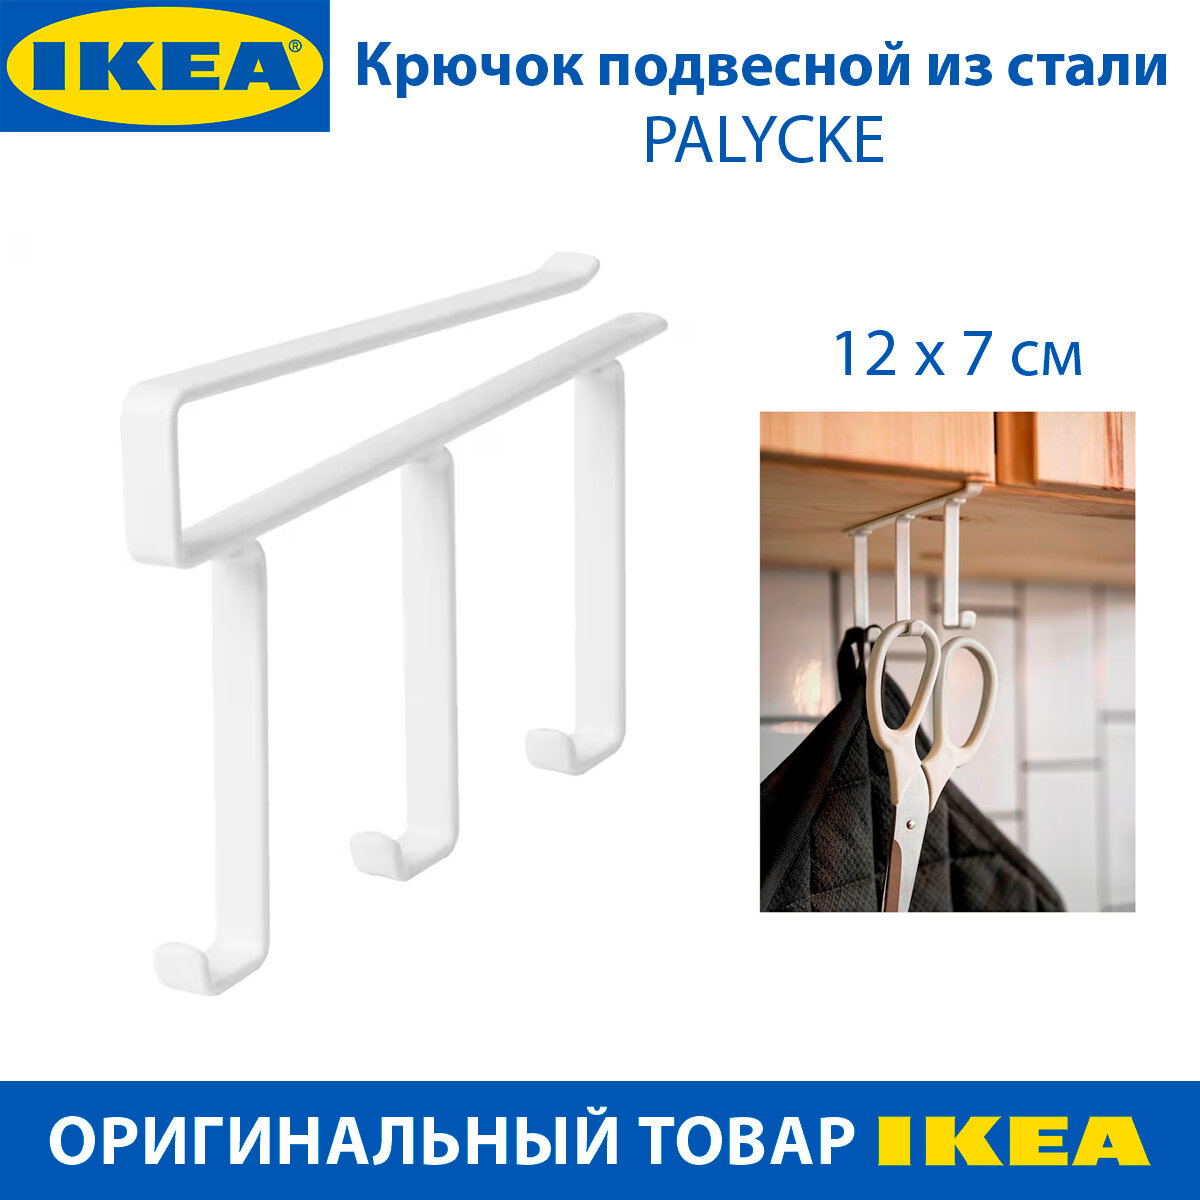 Крючок подвесной IKEA - PALYCKE (палике) белый 1 шт